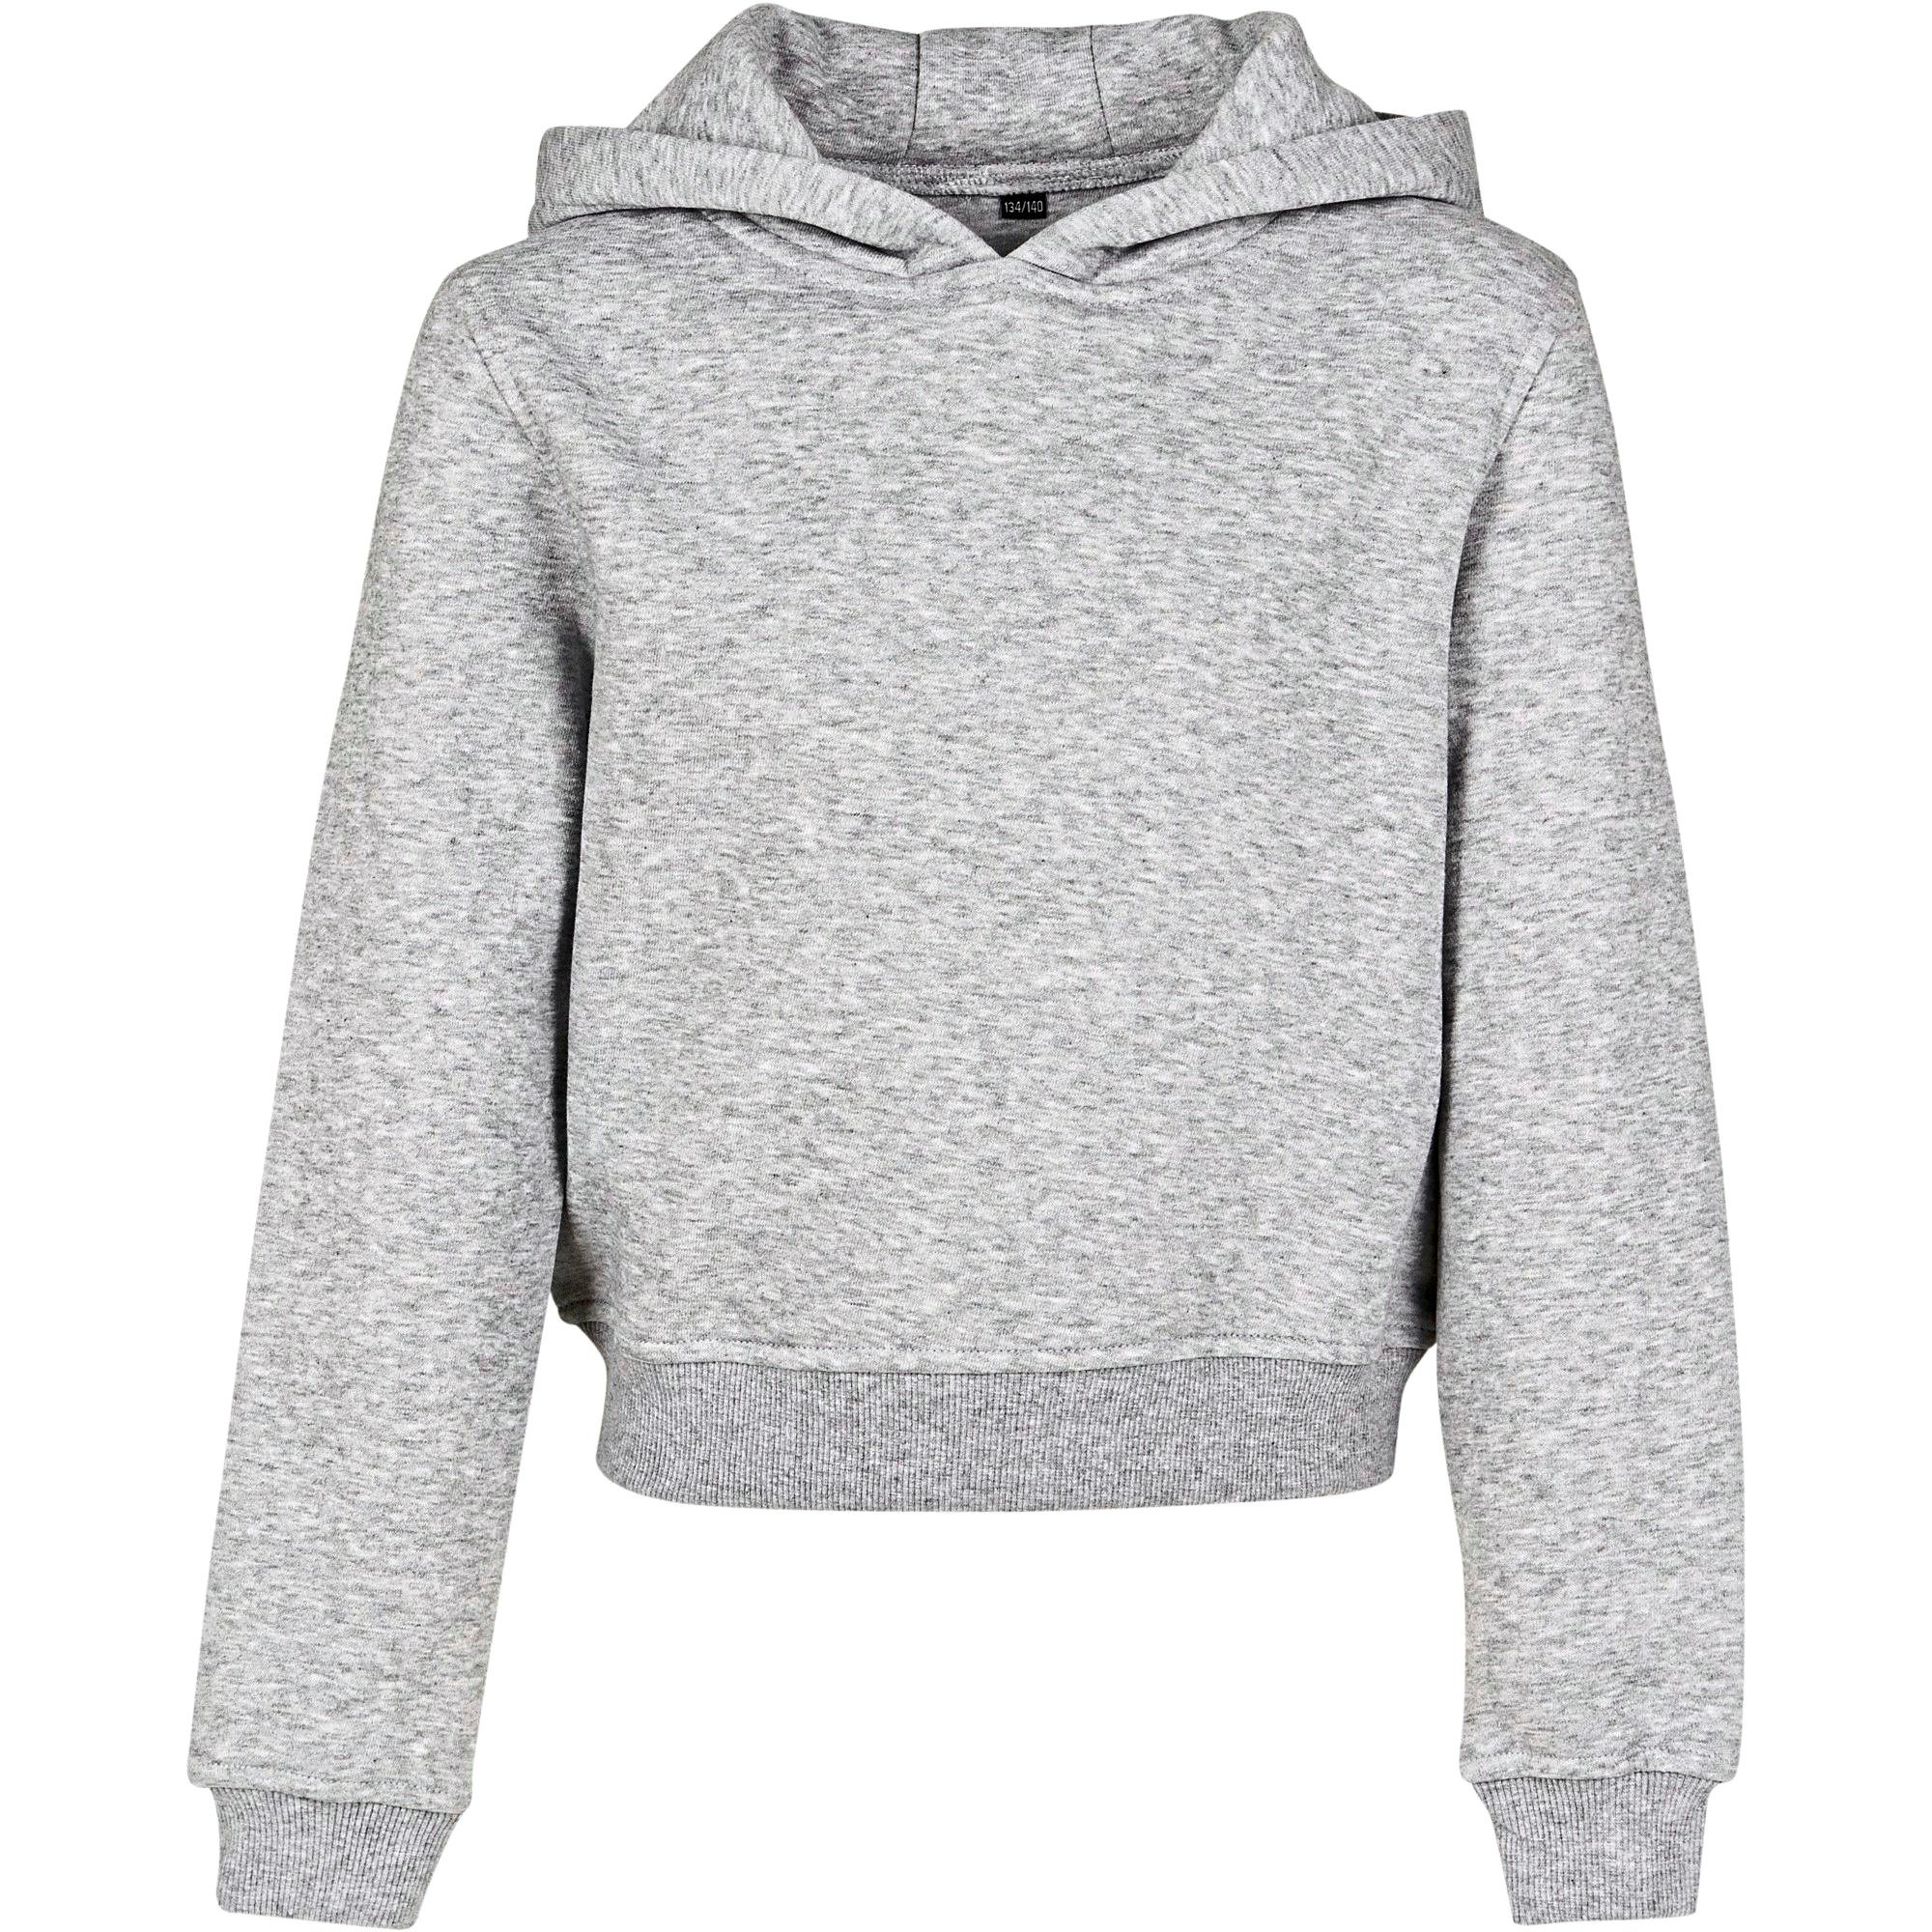 Build Your Brand Kapuzensweatshirt modischer bauchfreier Kapuzen Hoody / Cropped Sweatshirt für Mädchen bauchfrei Kapuzen-Sweater Grau